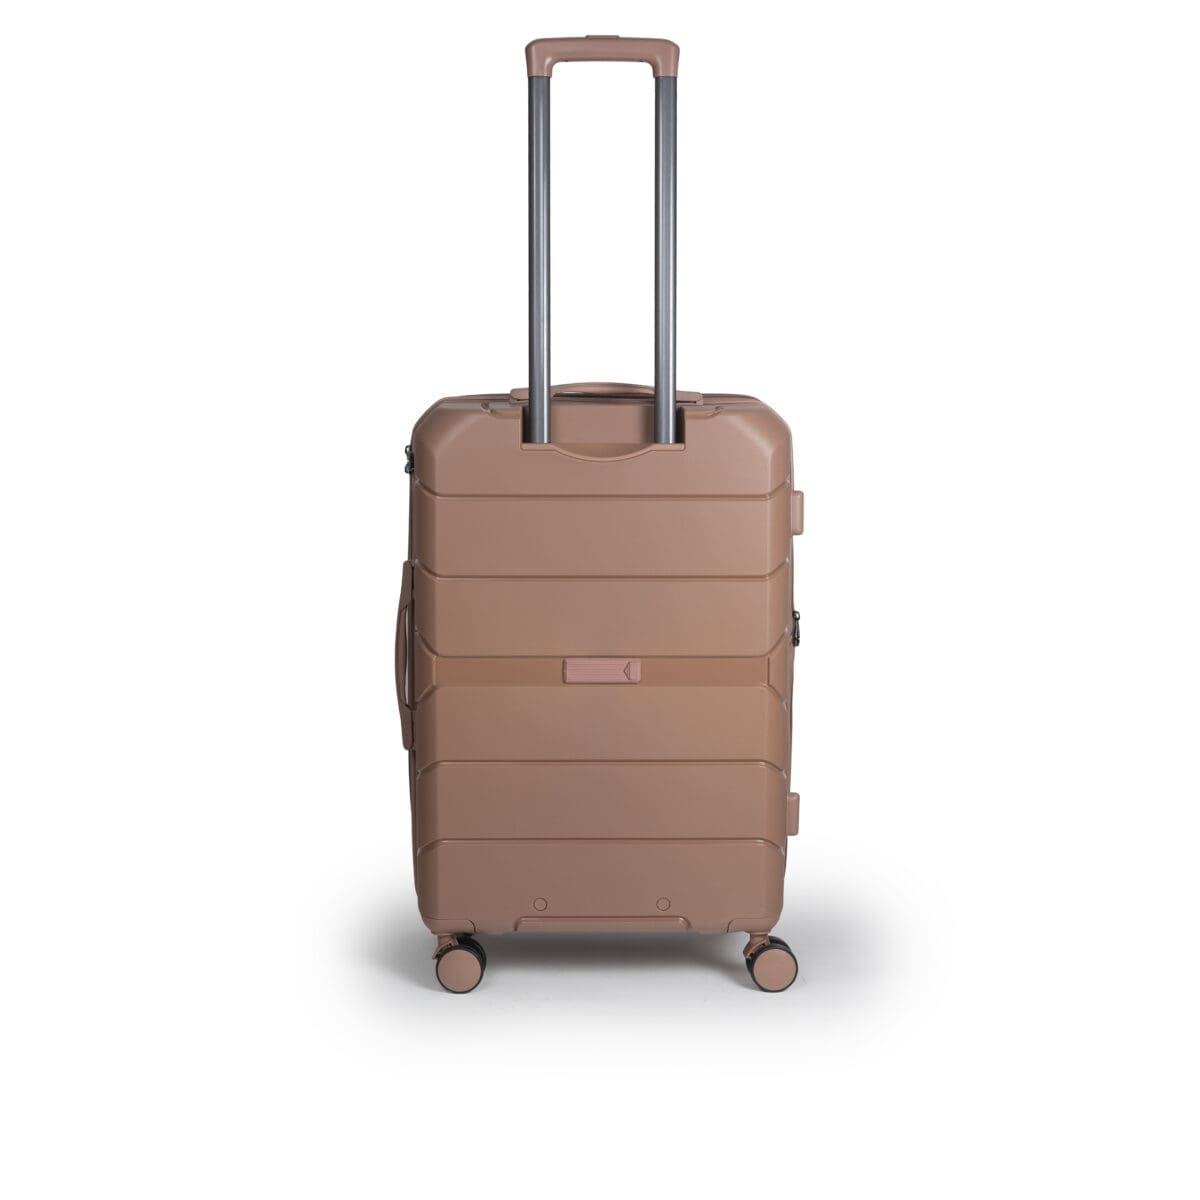 Πίσω πλευρά βαλίτσας μεσαία με tsa lock διπλά ροδάκια από πολυπροπυλένιο άθραυστο υλικό και επέκταση σε ροζ χρώμα